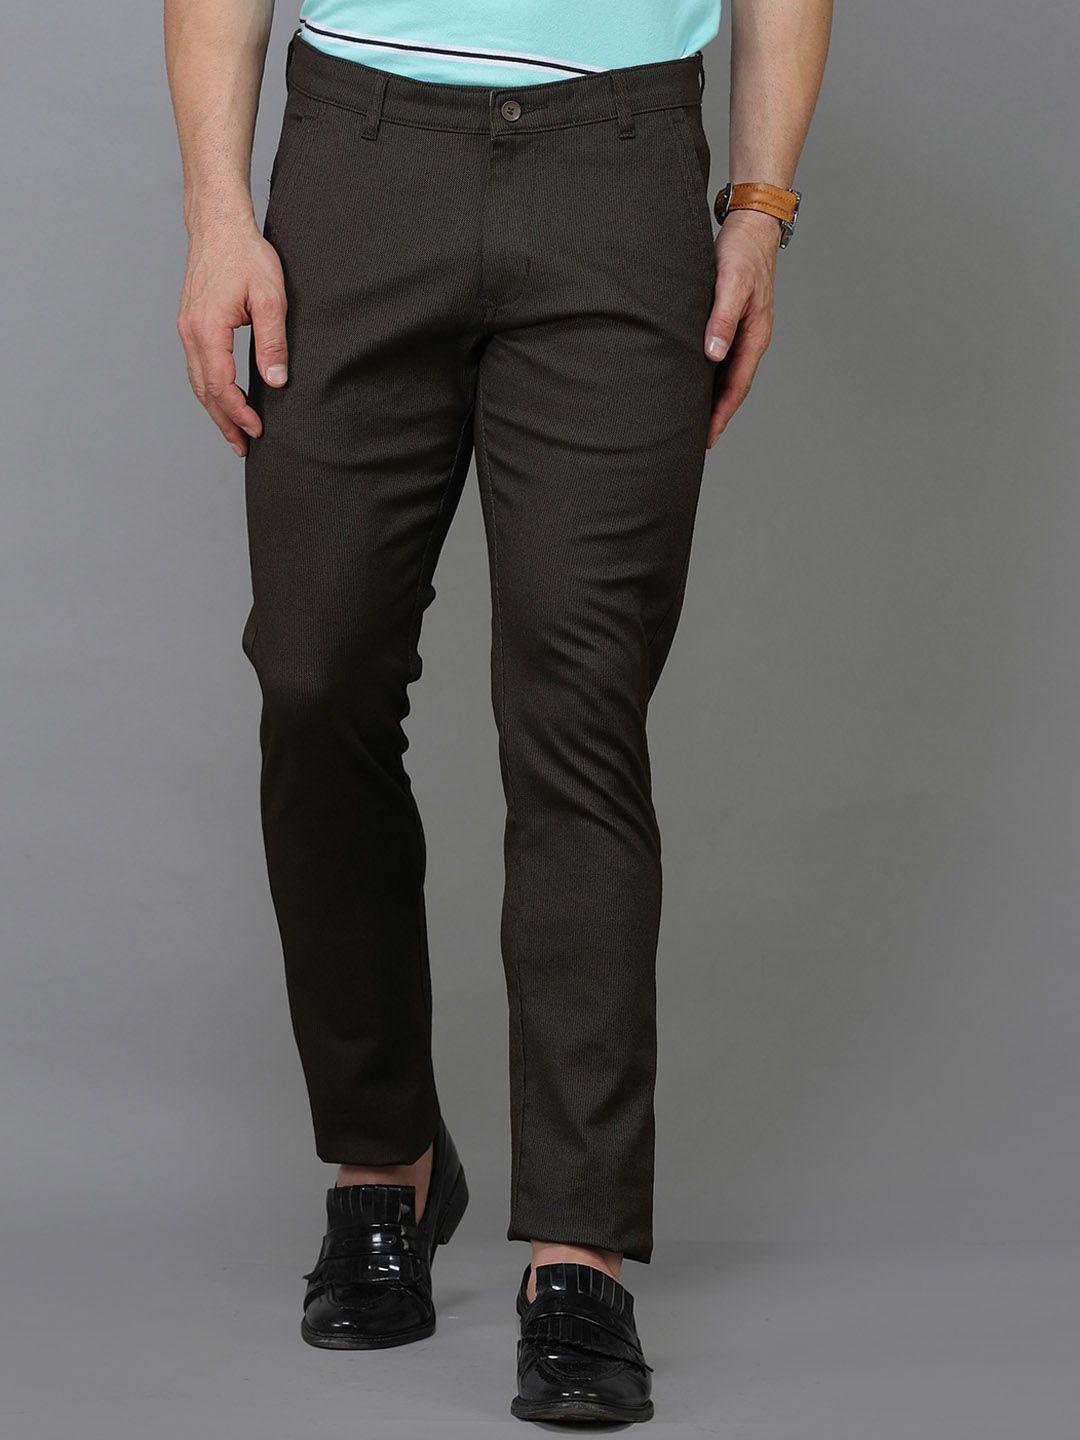 tqs men comfort mid-rise pure cotton trousers